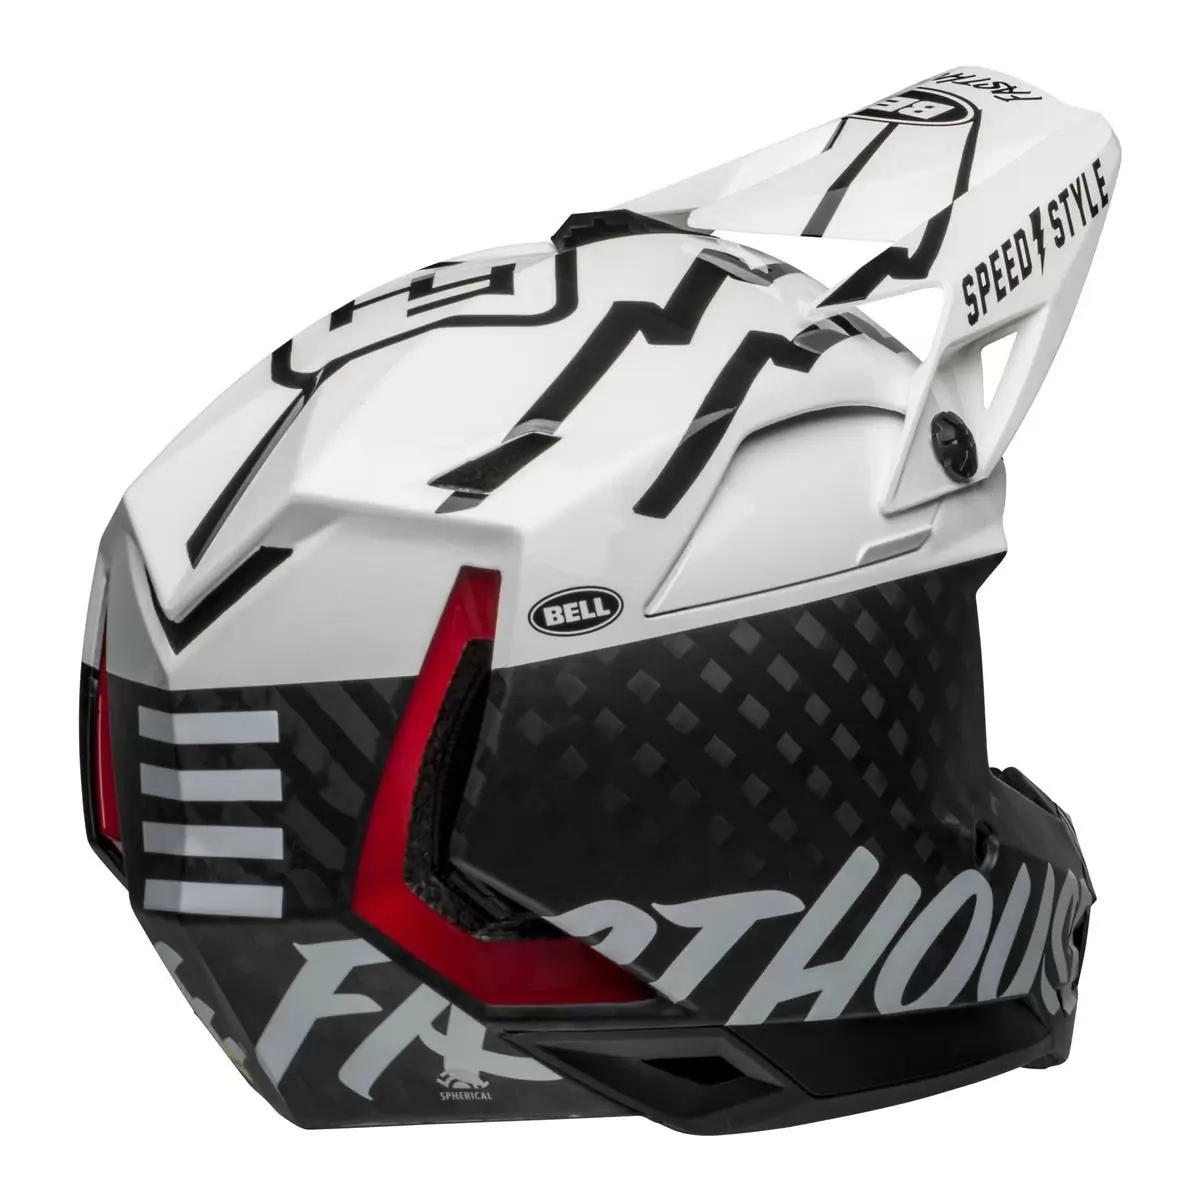 Full-10 Spherical Fasthouse Carbon Full Face Helmet Size XS/S (51-55cm) #4